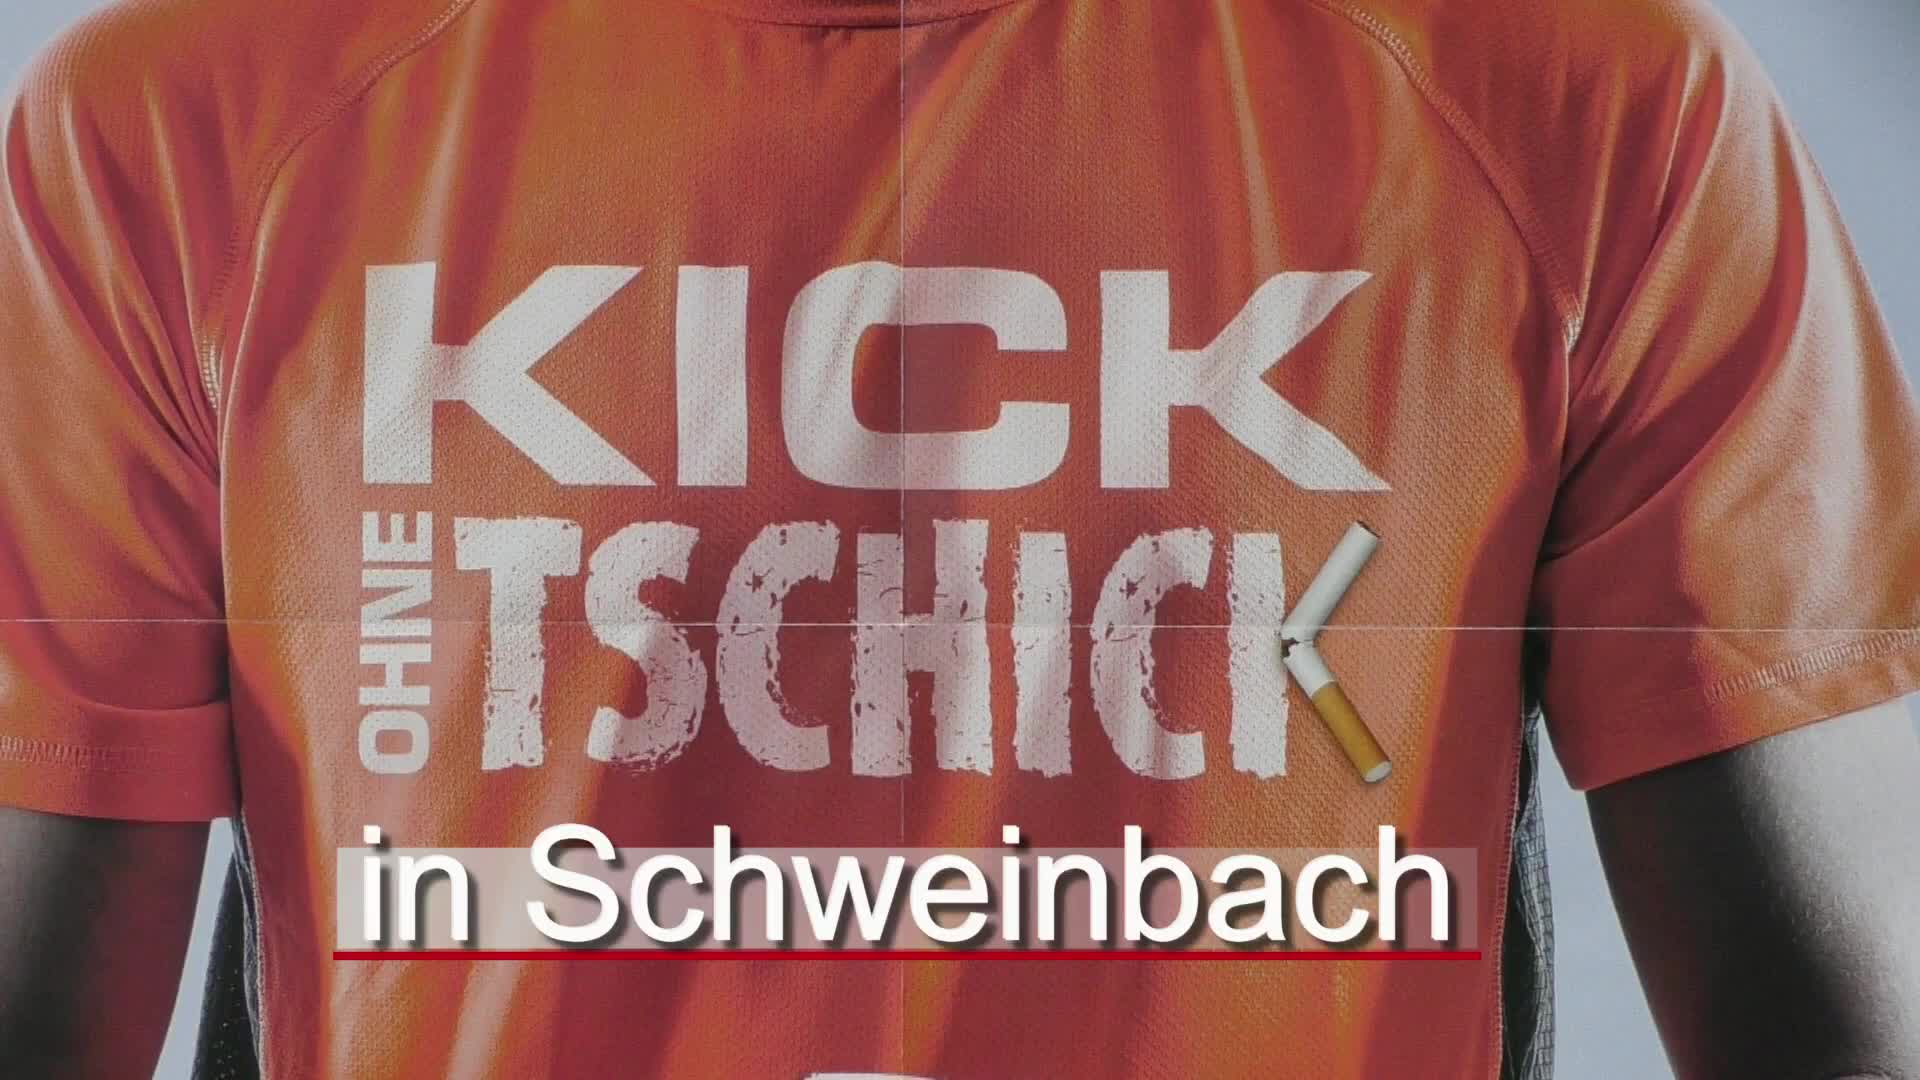 Kick ohne Tschick in Schweinbach